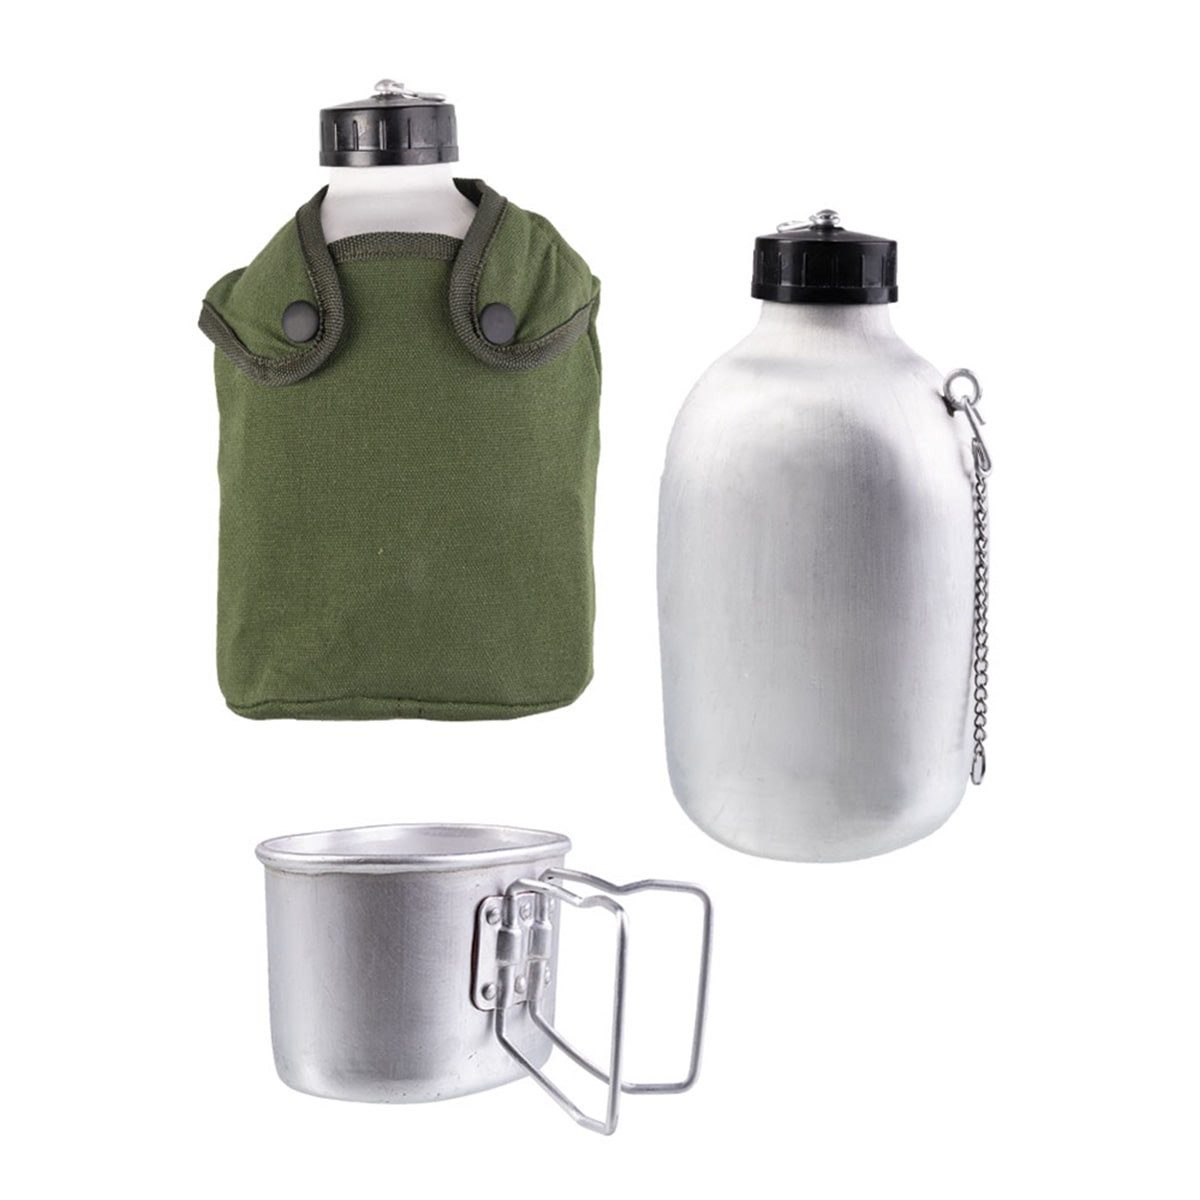 Mil-Tec Feldflasche Militär Feldflasche Alu 1,3L mit Becher und Hülle